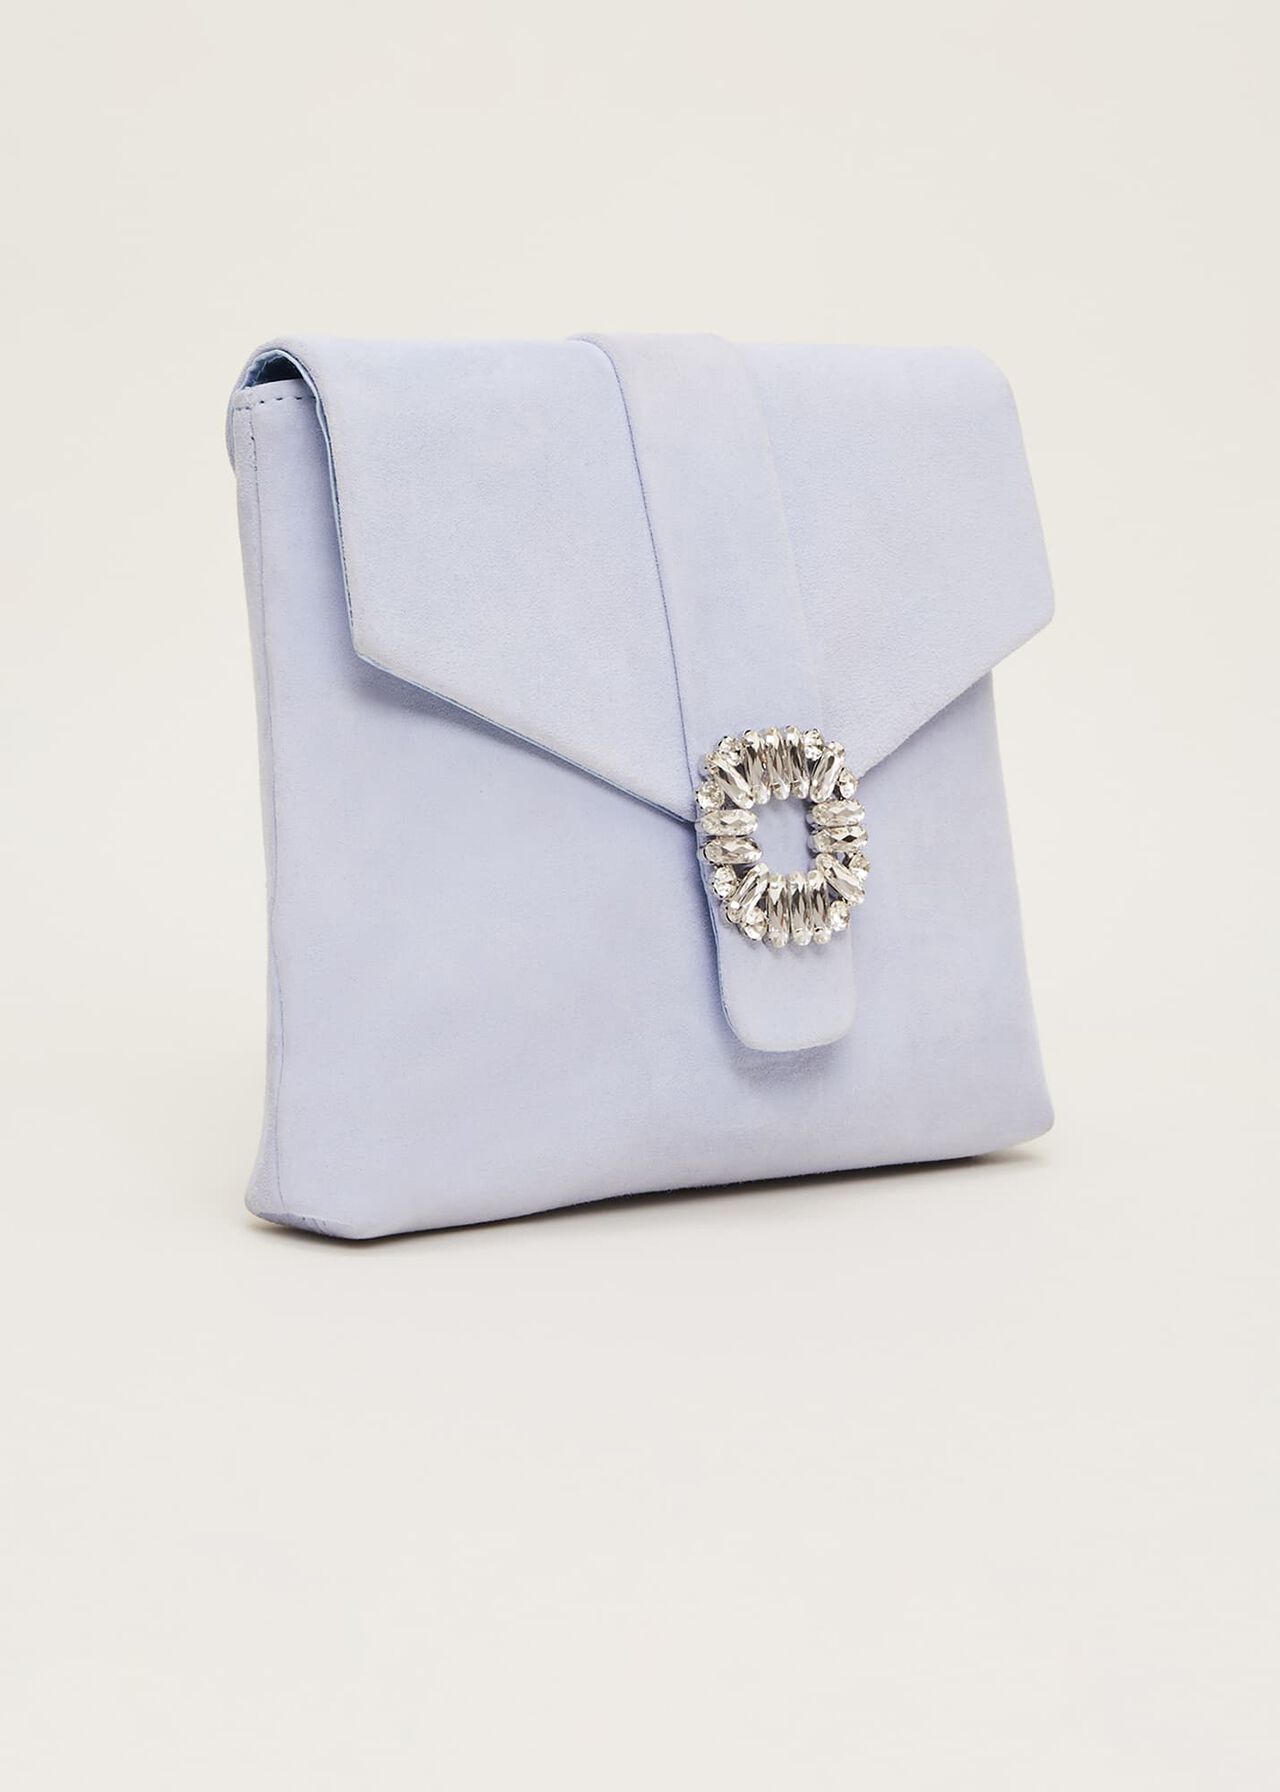 Embellished Clutch Bag